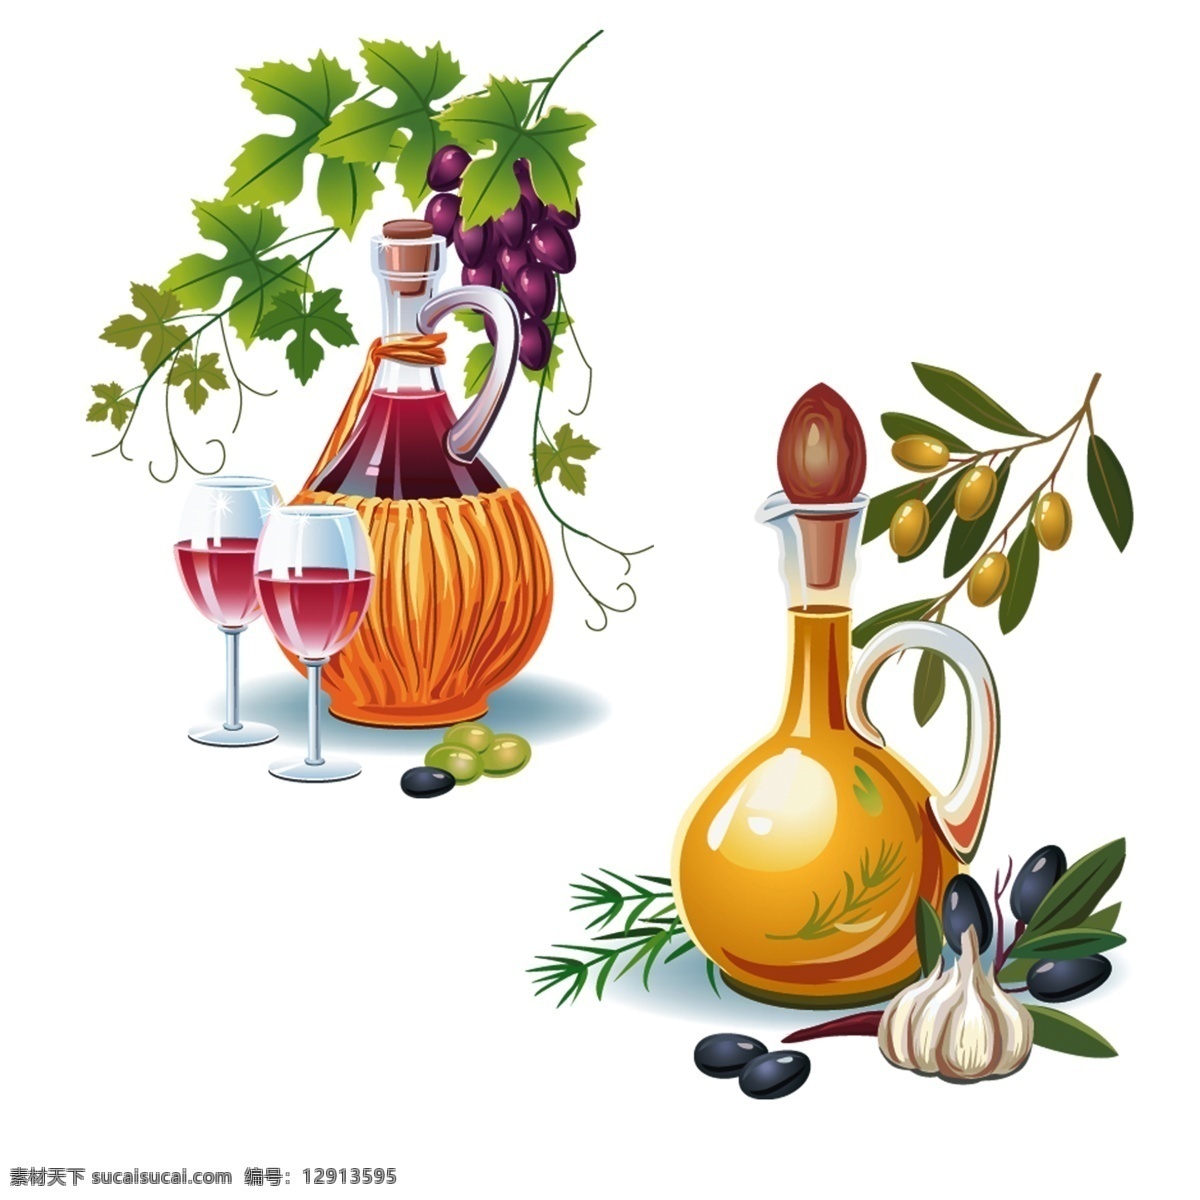 色彩手绘图 矢量素材 色彩 绘画 油画 水果 酒杯 瓶子 橄榄 叶子 植物